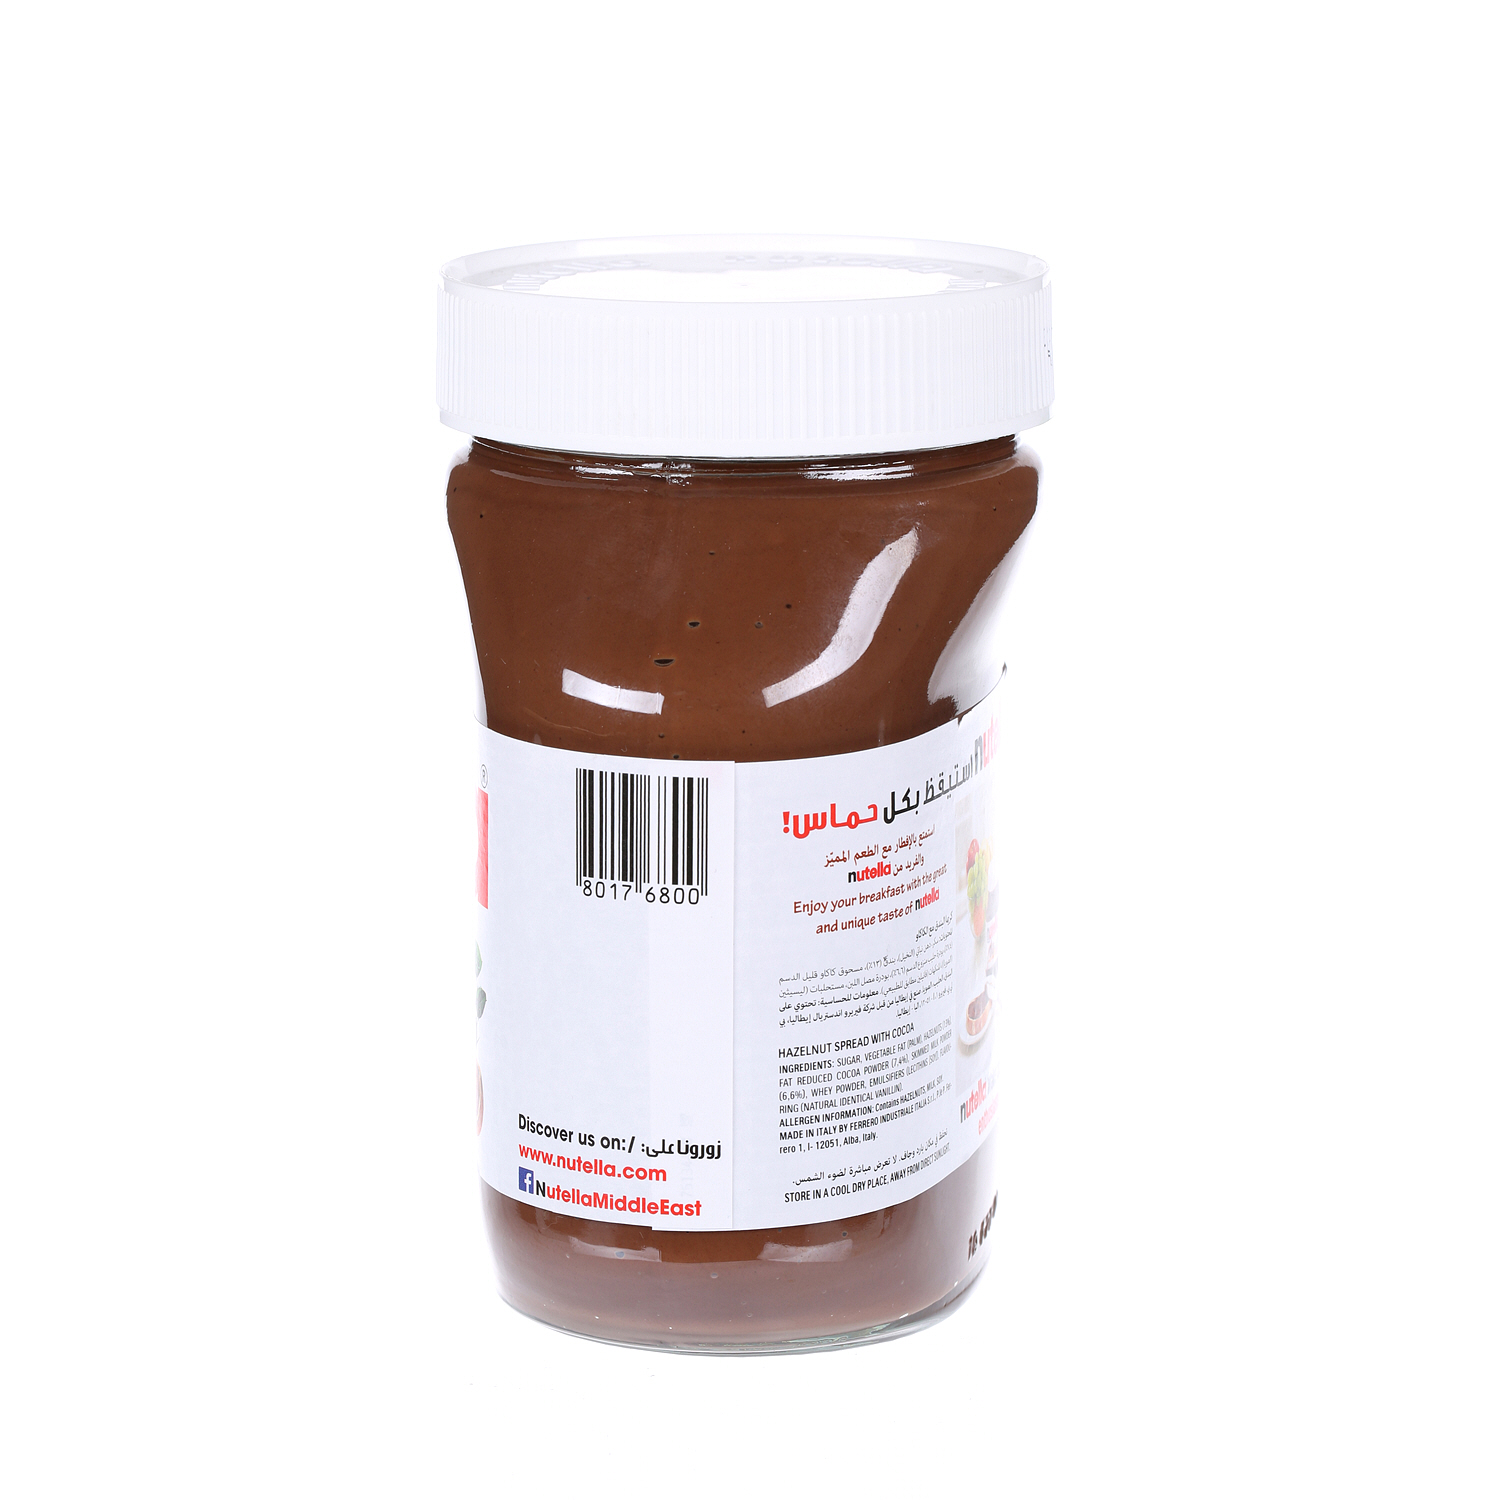 Nutella Spread Choco Jar 750 g